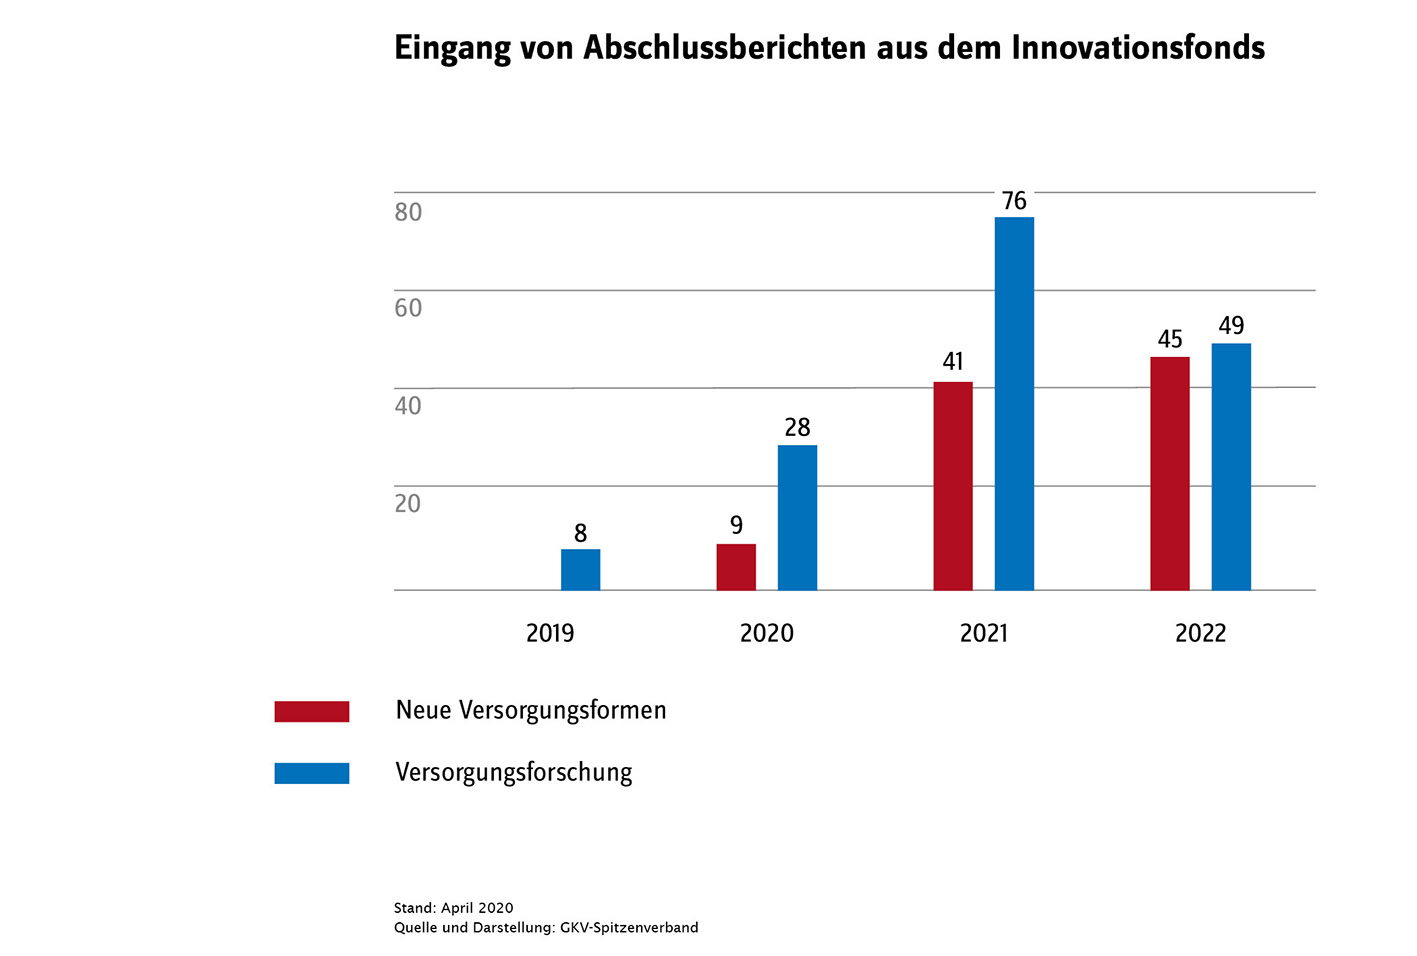 Eingang von Abschlussberichten aus dem Innovationsfonds, 2019 bis 2022